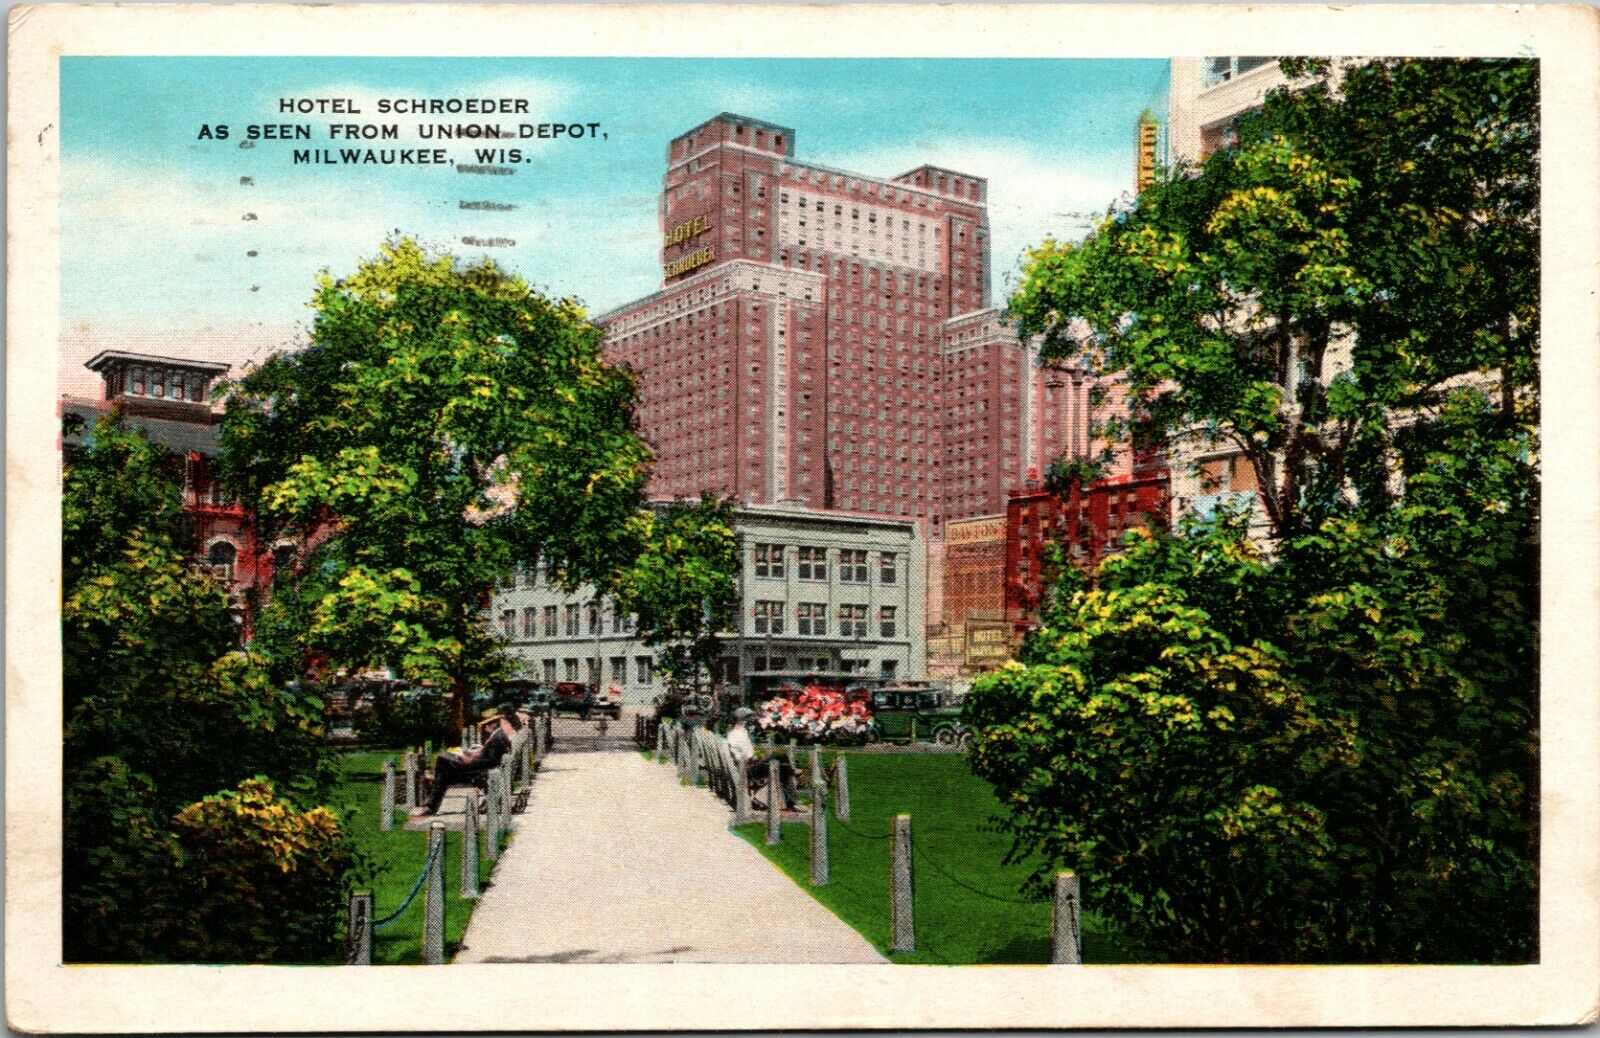 WI - Postcard - HOTEL SCHROEDER, UNION DEPOT, MILWAUKEE WISCONSIN